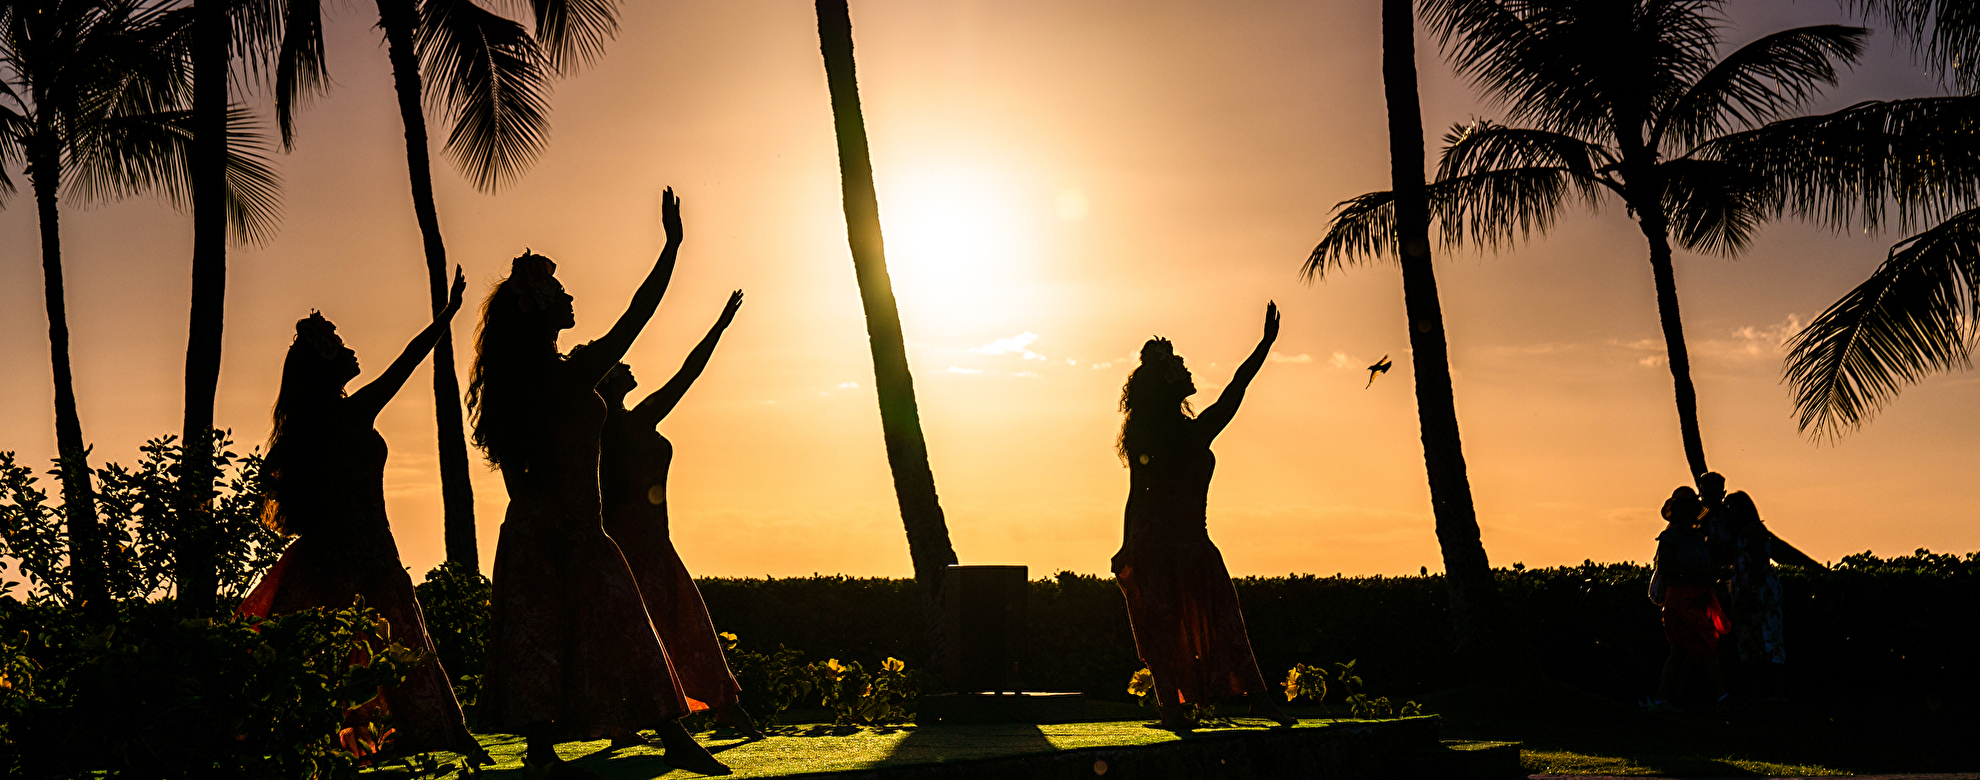 ハワイの伝統であるフラダンスとは？起源や鑑賞時のポイントを紹介